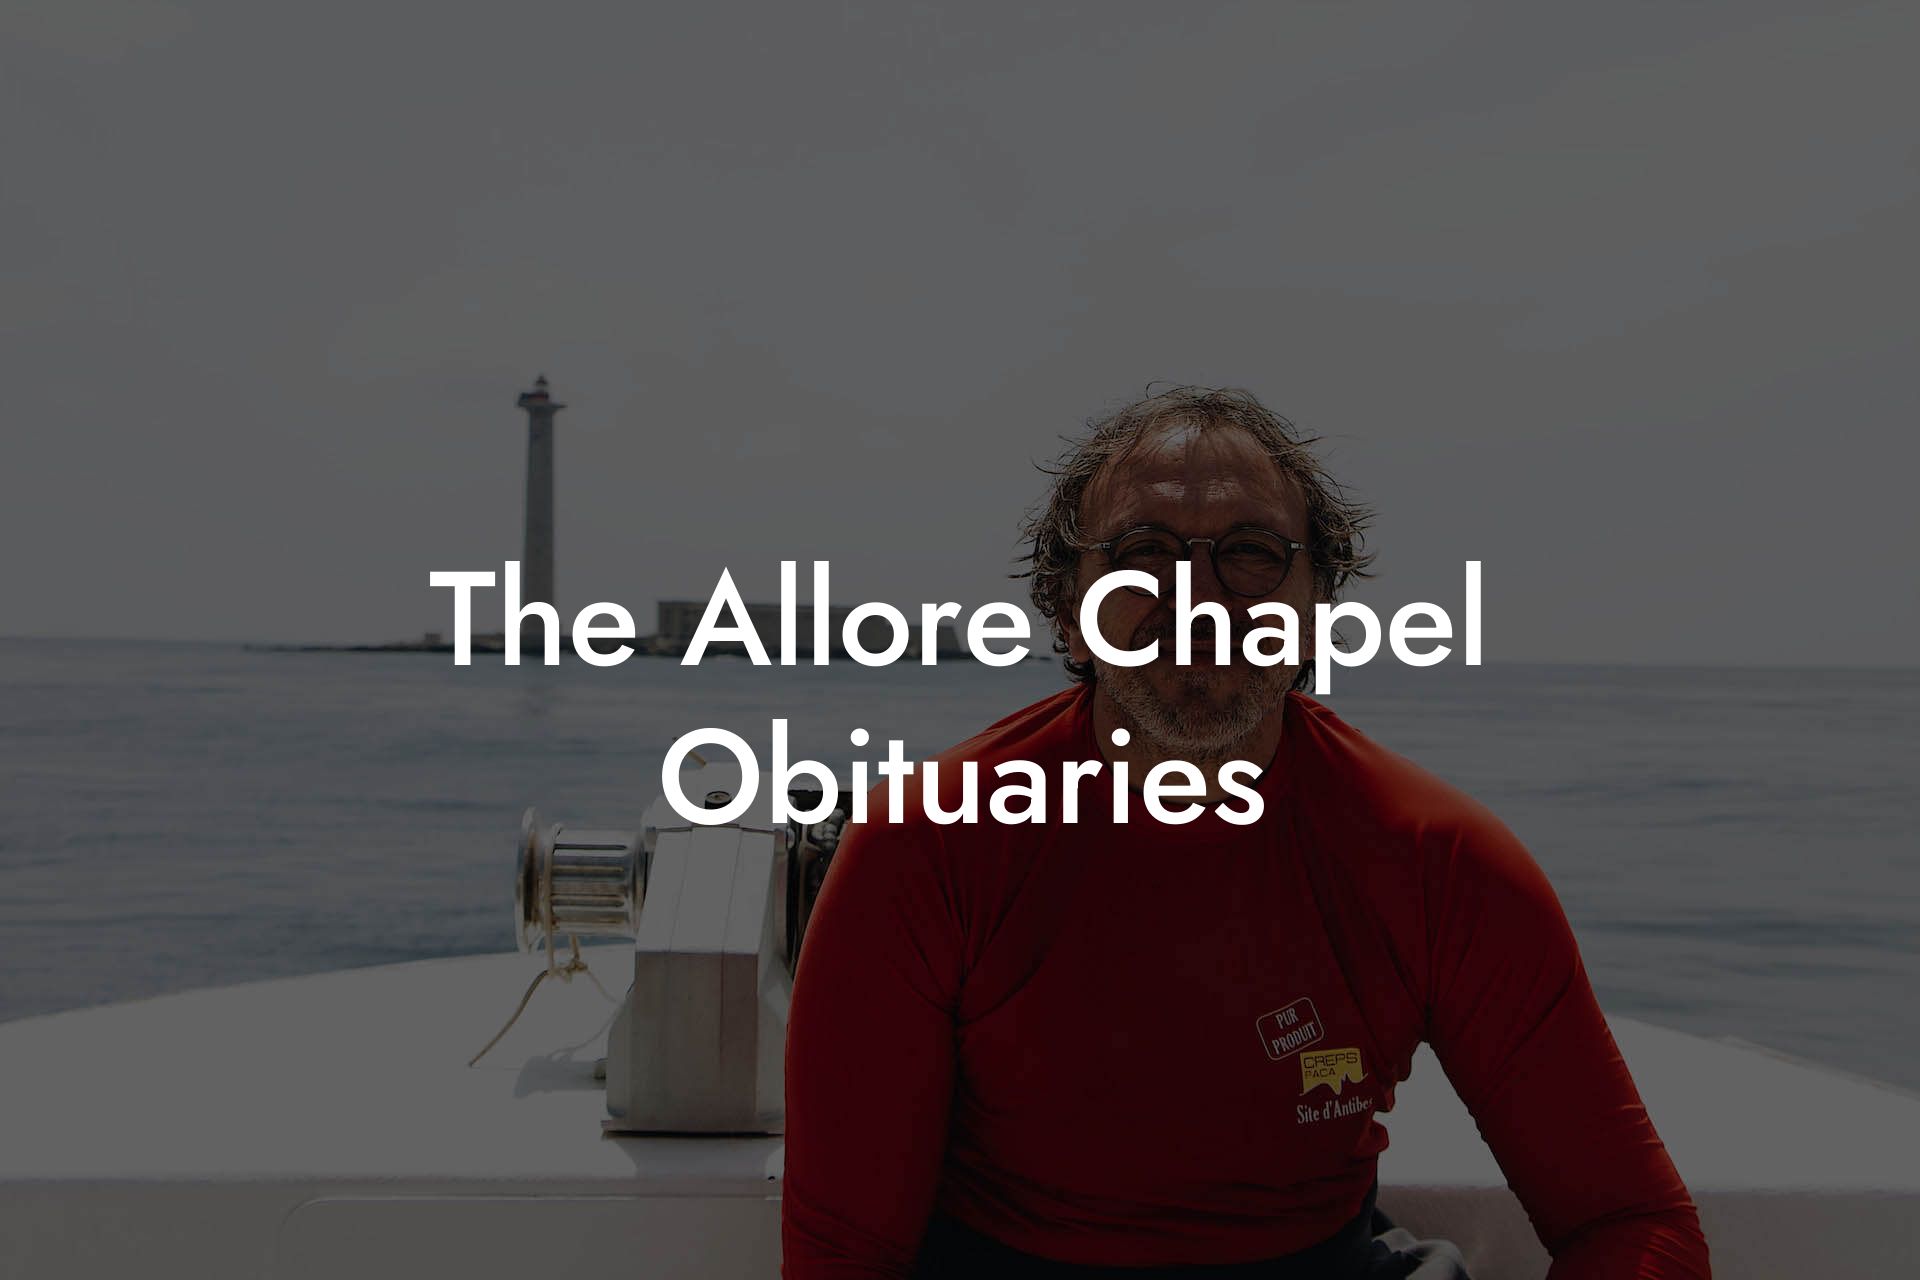 The Allore Chapel Obituaries